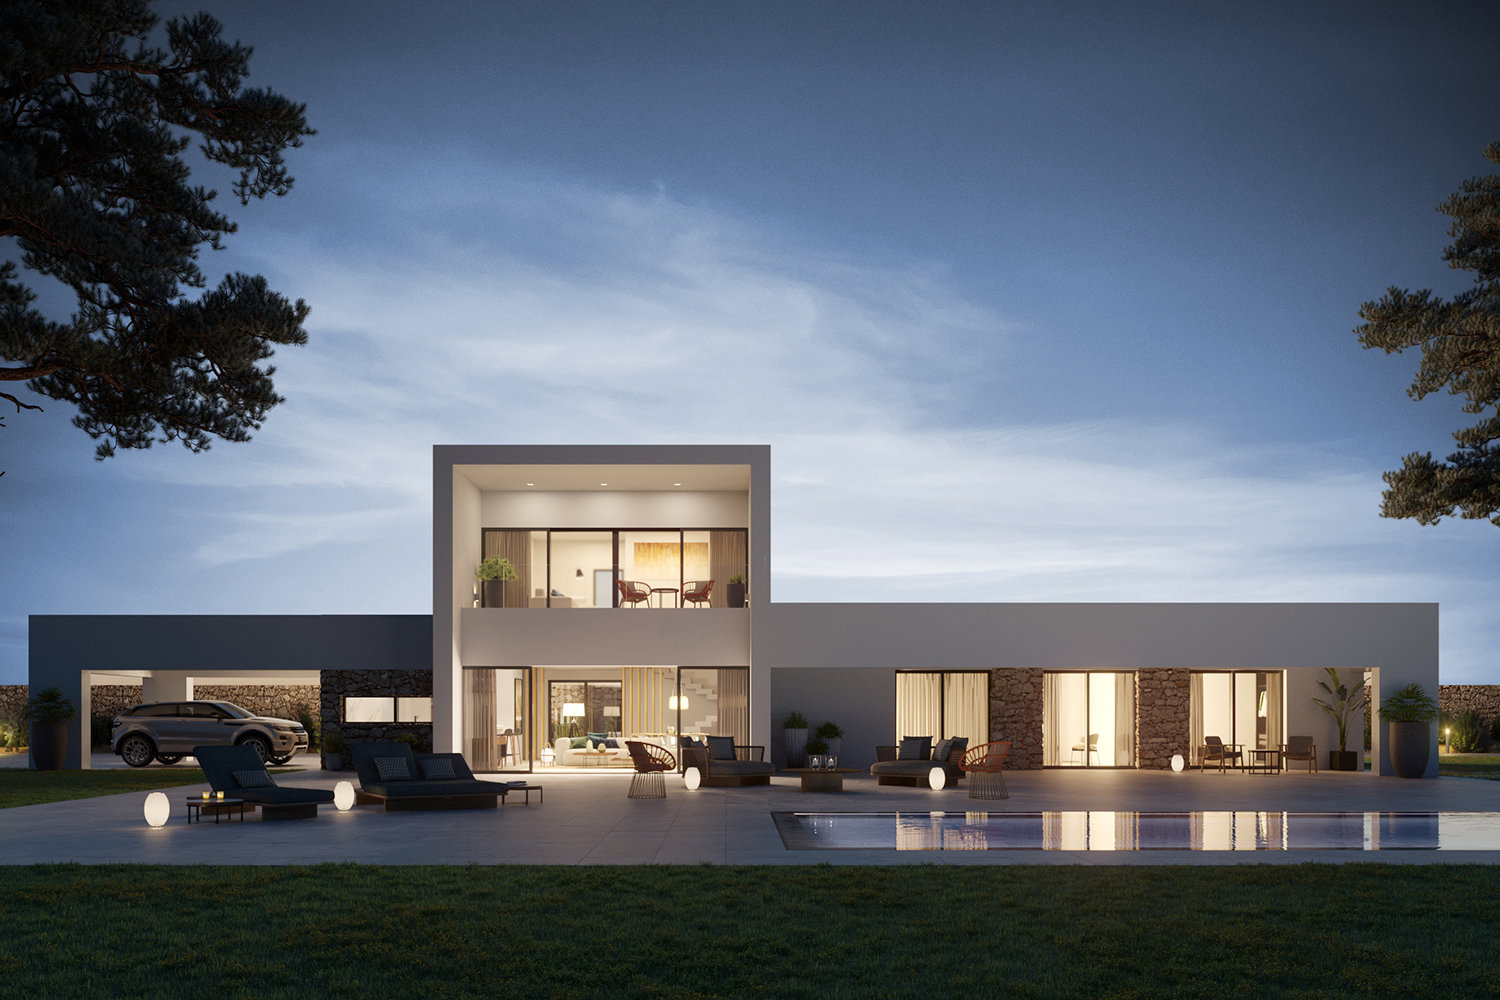 Además de diseños a medida, Hormipresa ofrece nueve modelos de casas prefabricadas a precios muy competitivos, como la casa L6 de la imagen, con una superficie de 235 metros cuadrados más 83 de pérgolas a partir de 346.000 euros. 